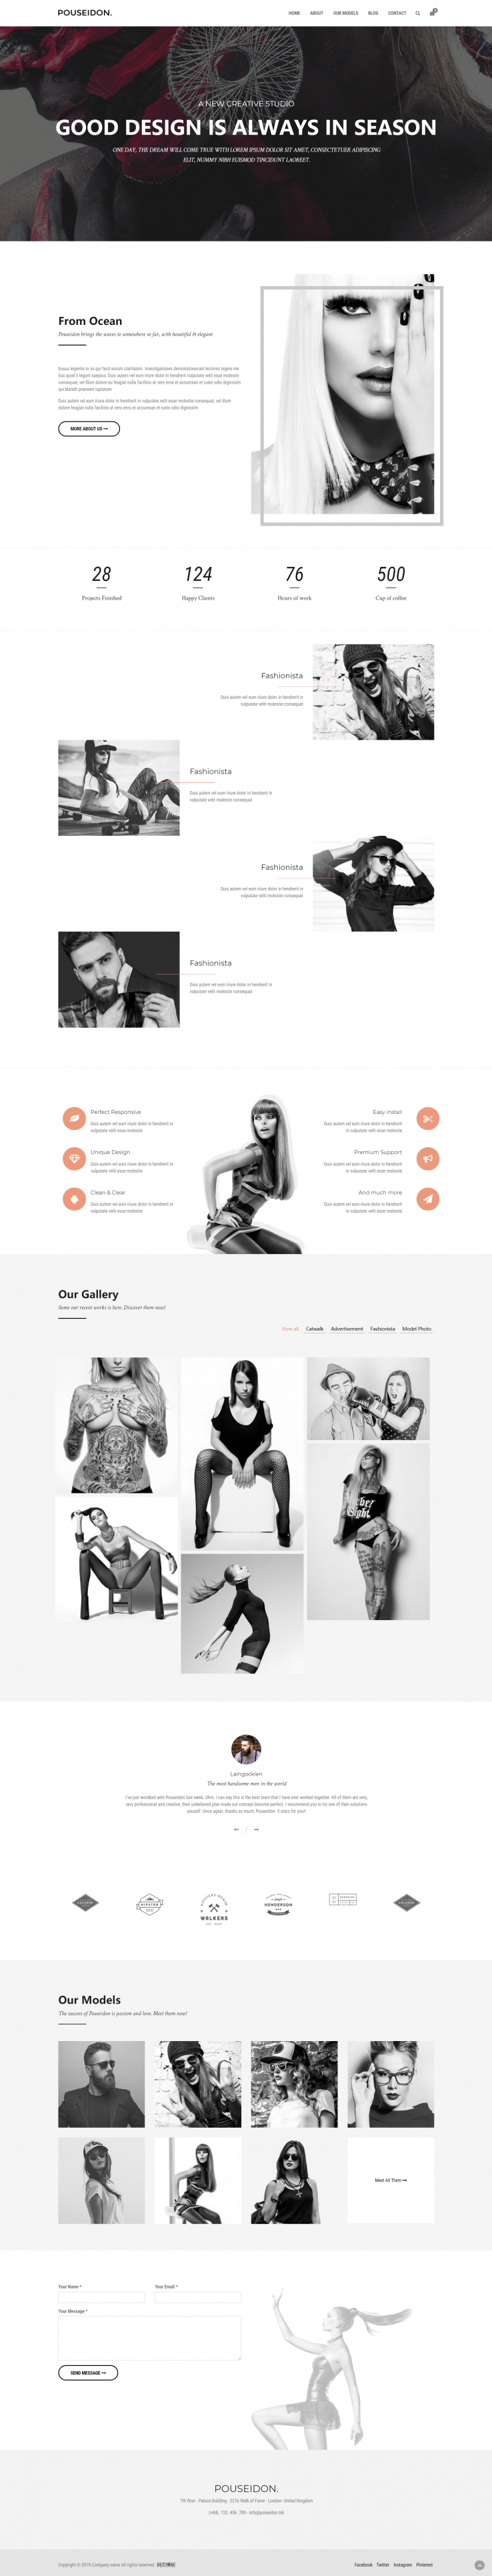 灰色欧美风格响应式创意工作室网页模板